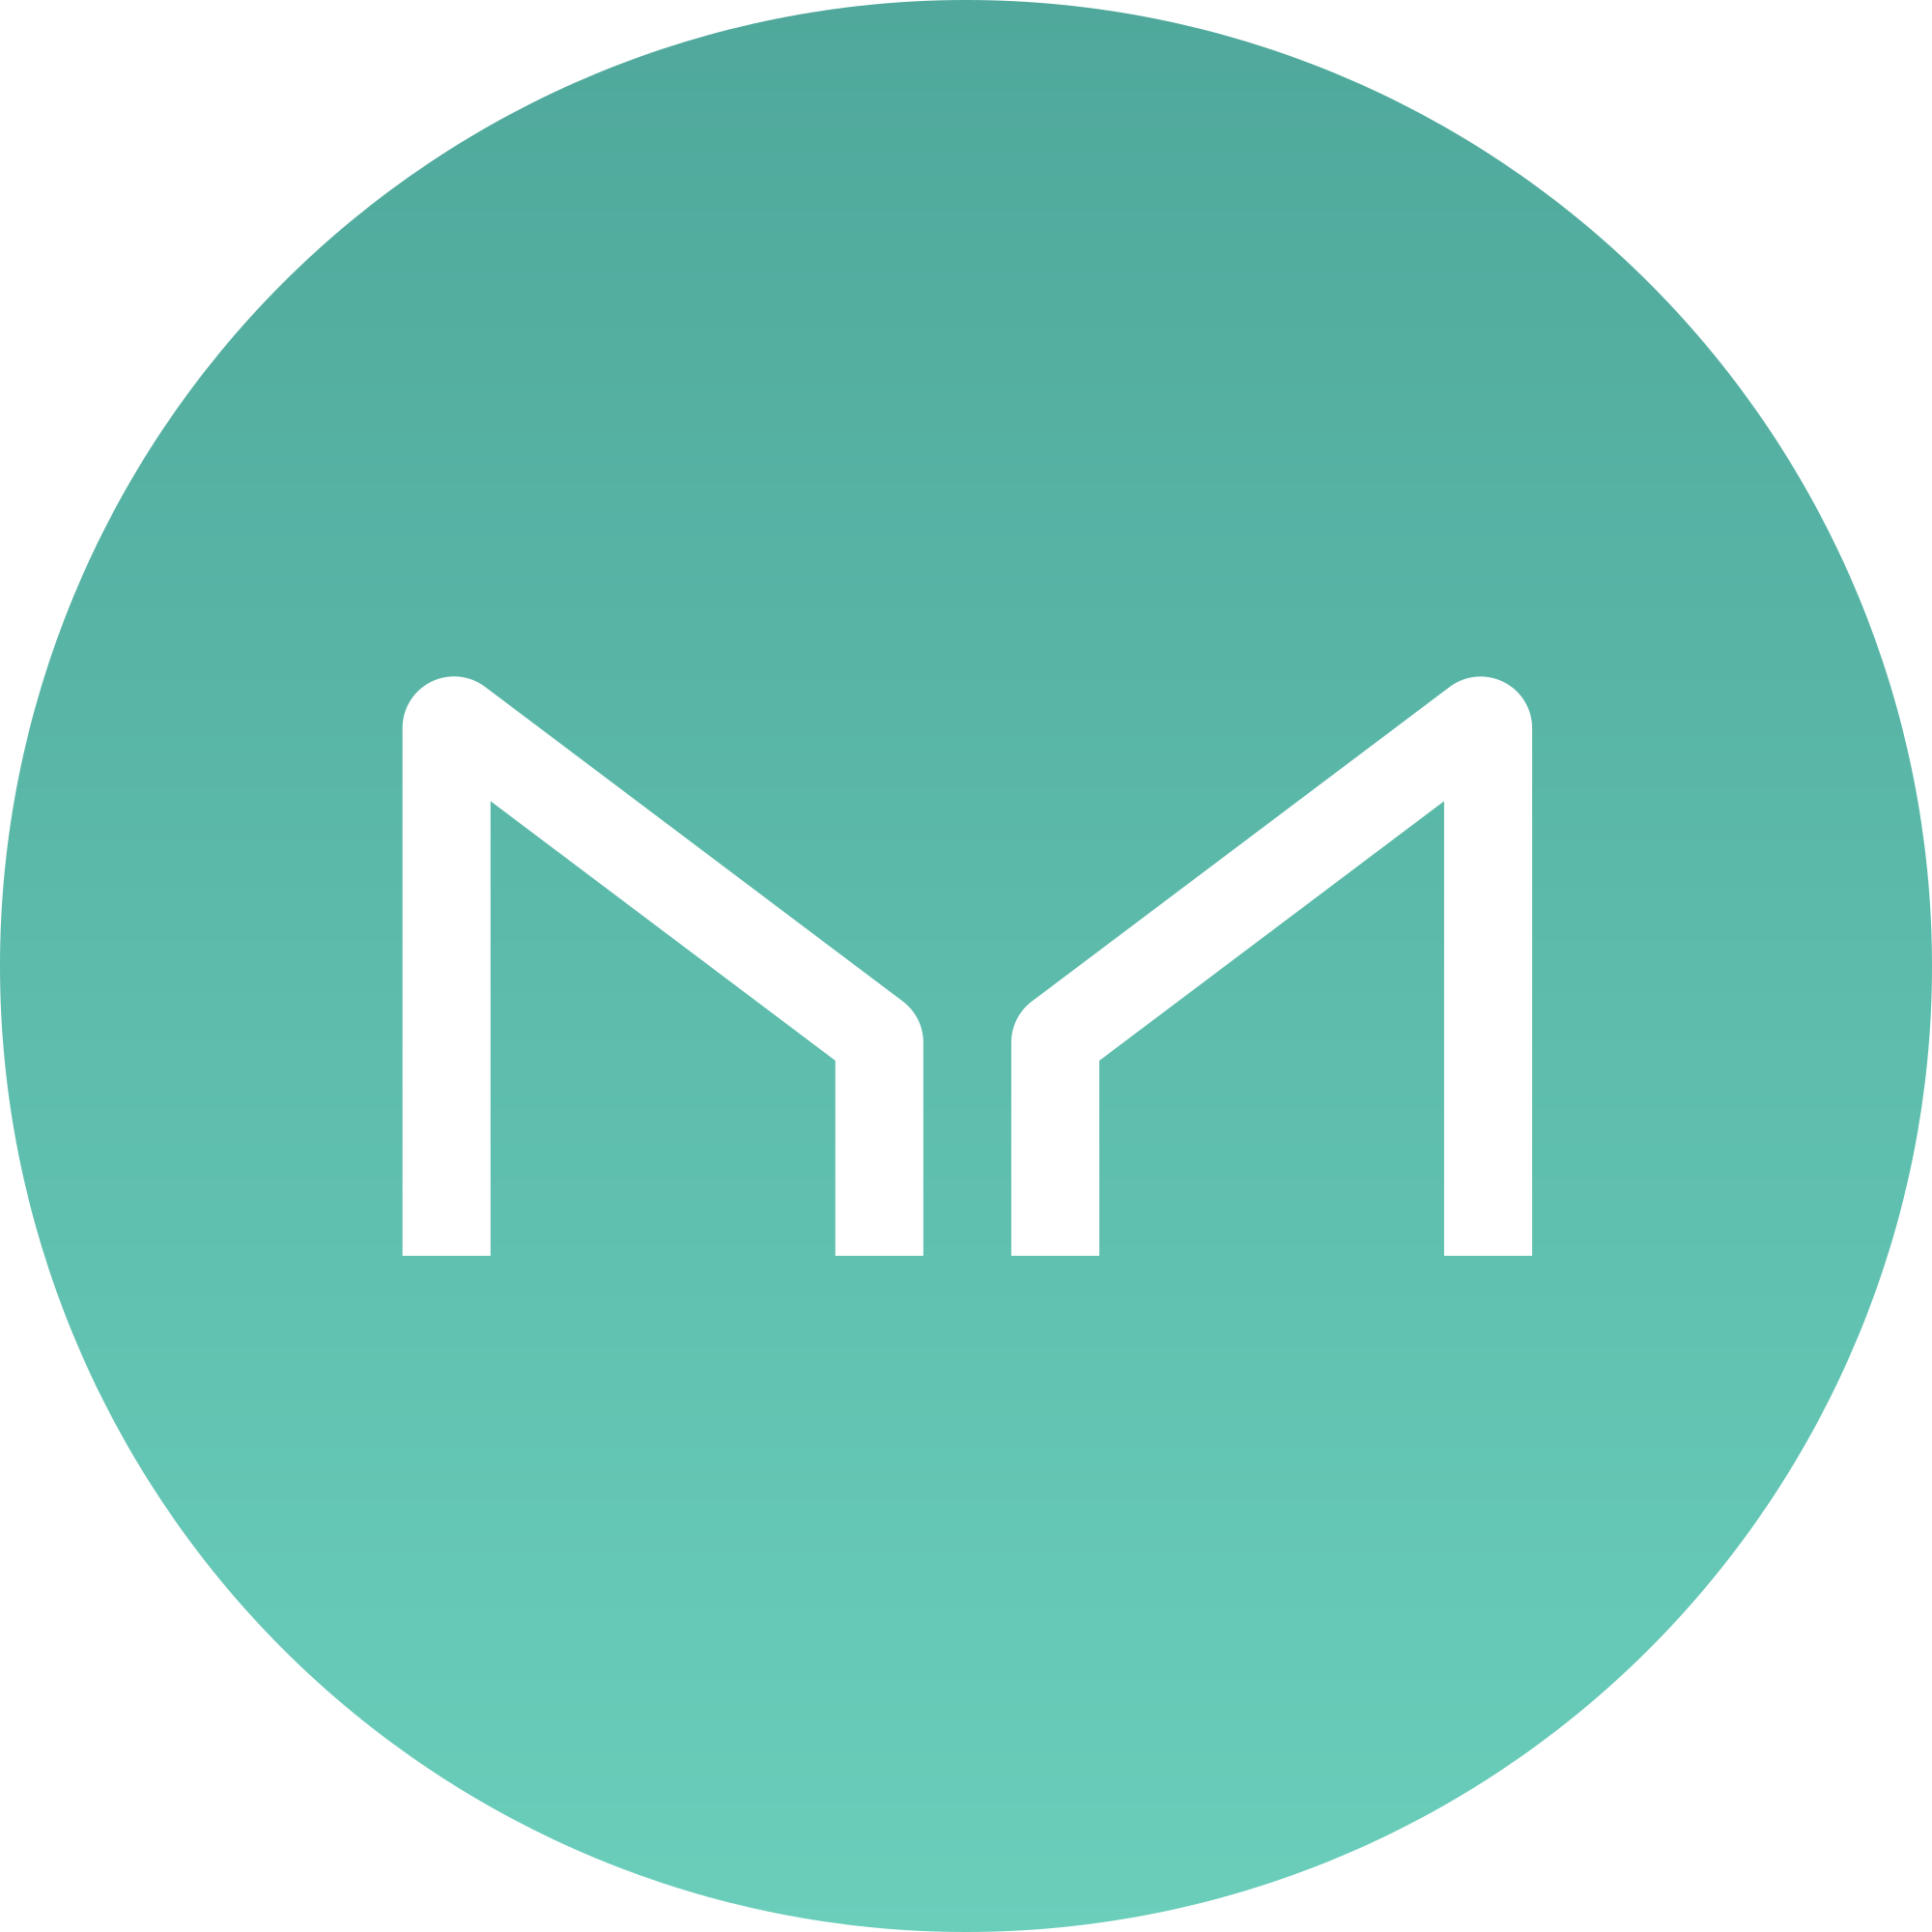 Maker (MKR) Logo .SVG and .PNG Files Download